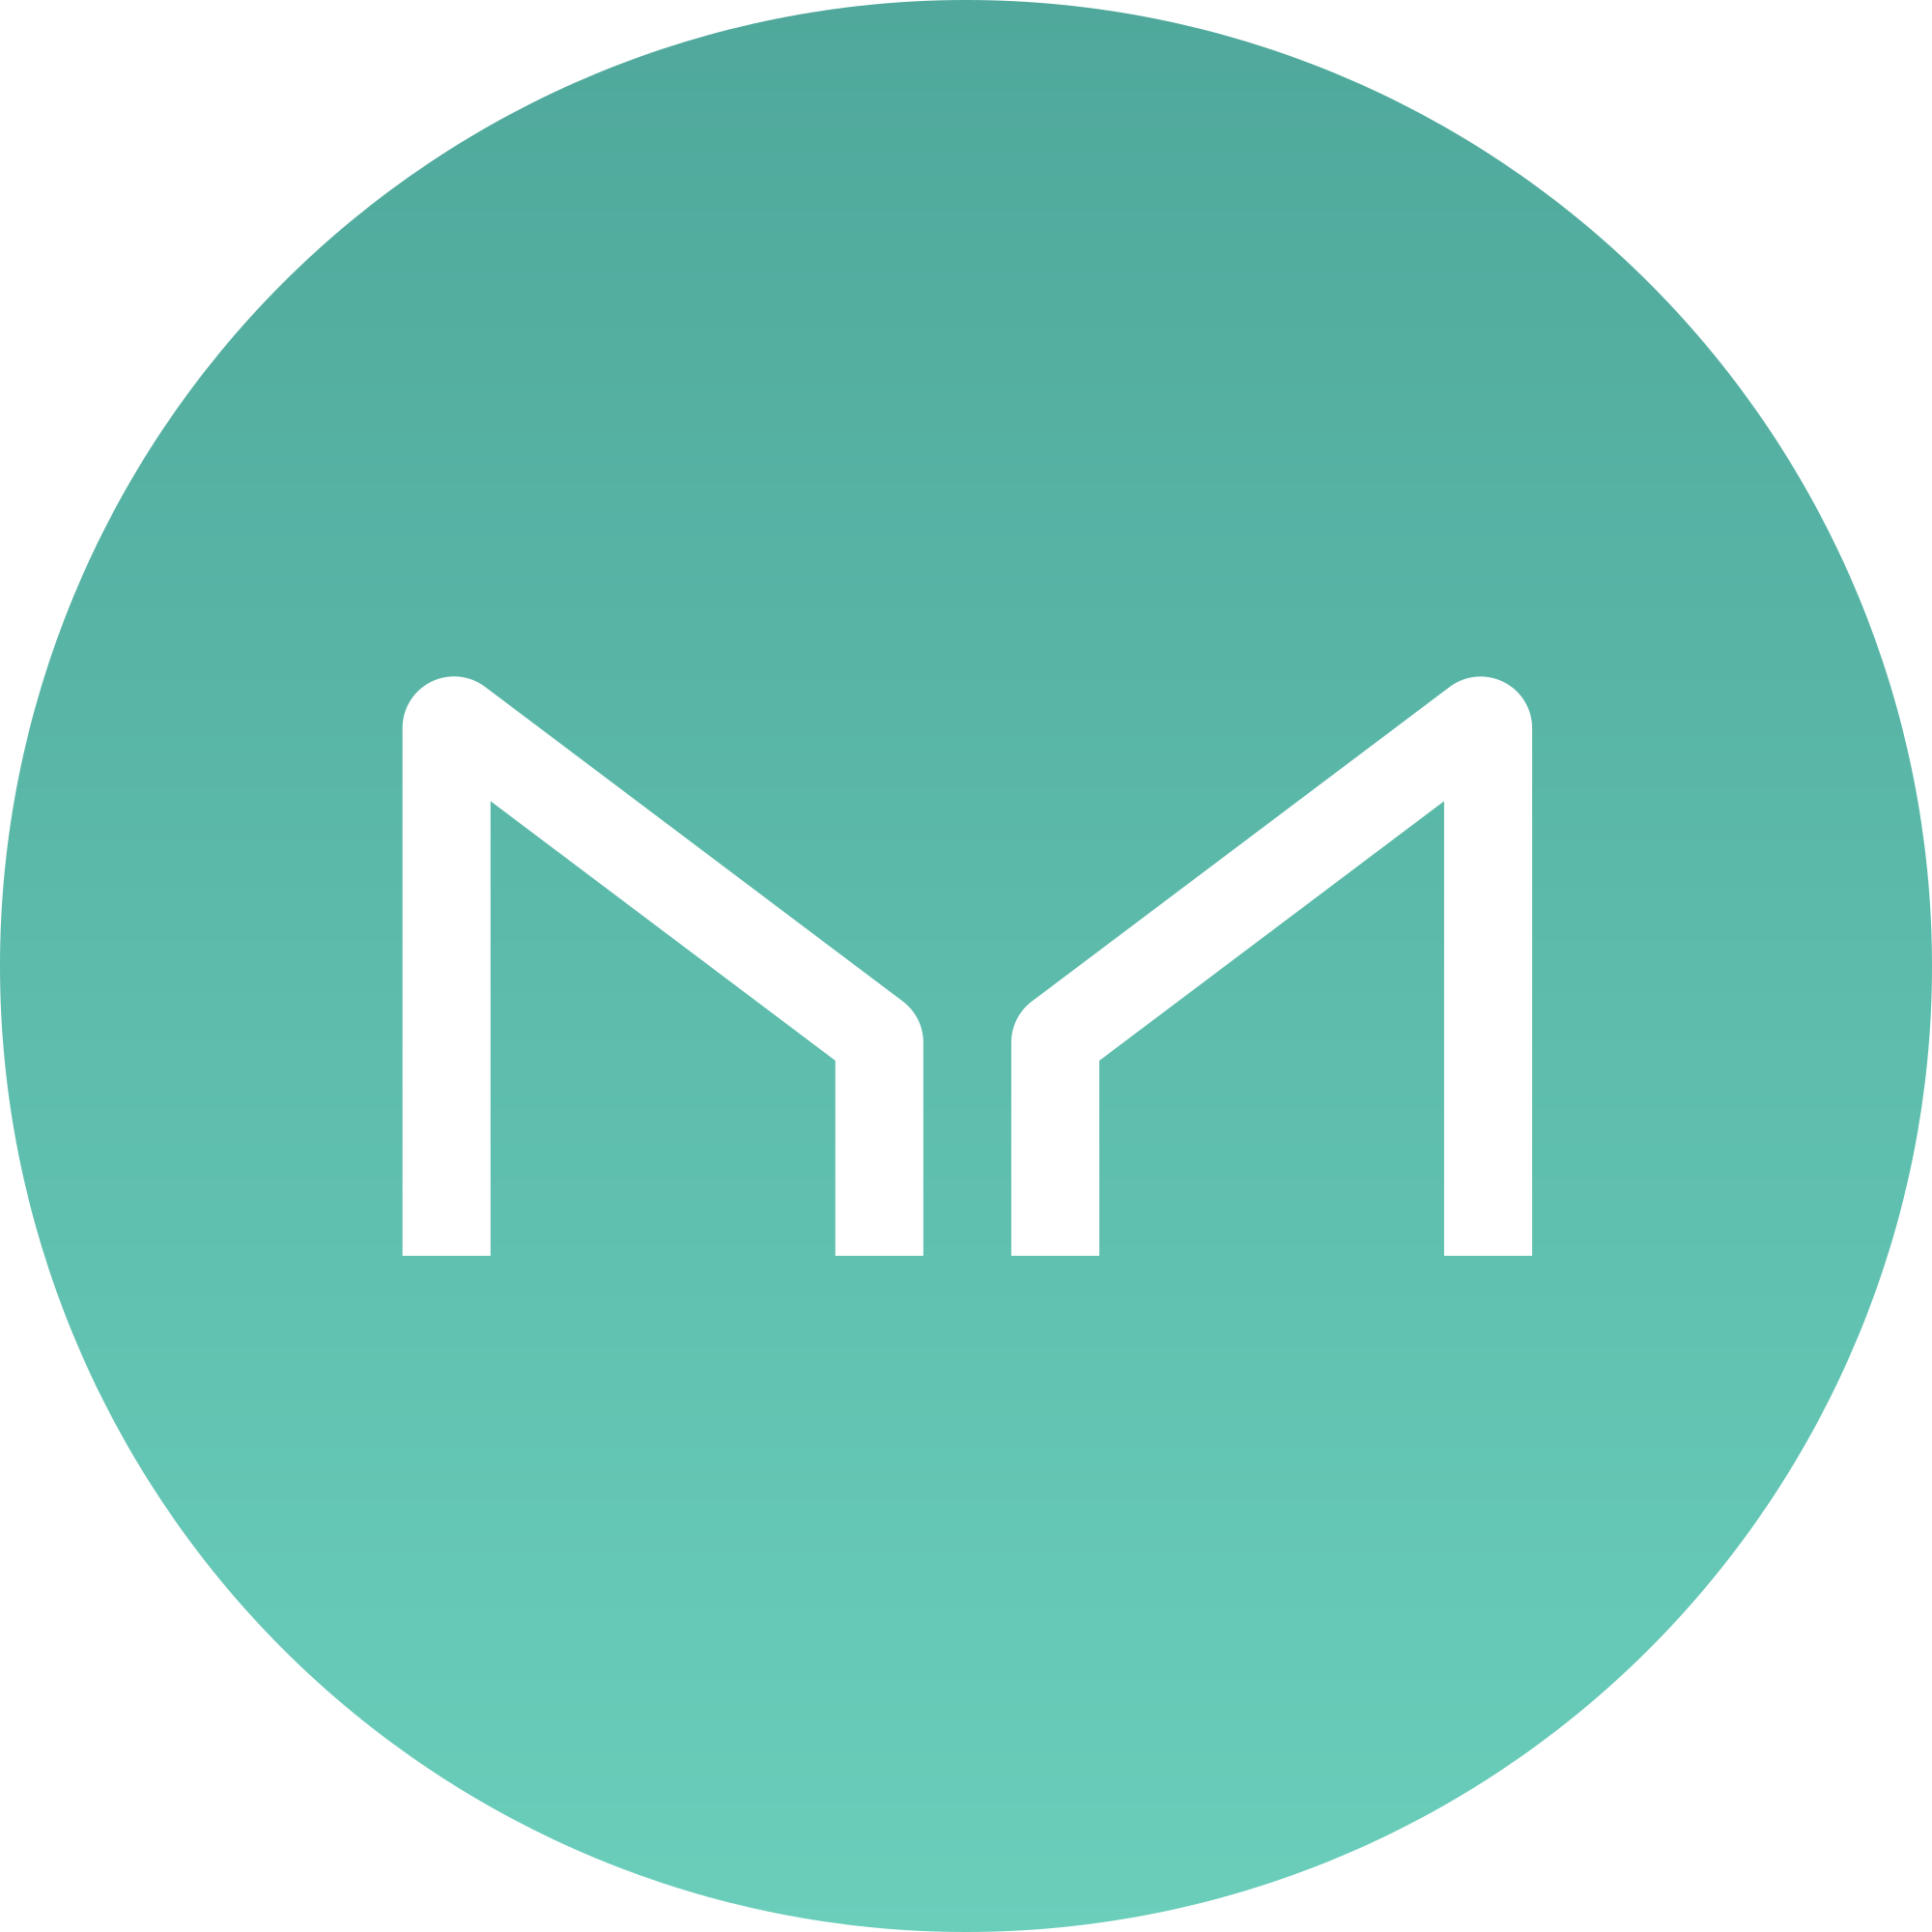 Maker (MKR) Logo .SVG and .PNG Files Download